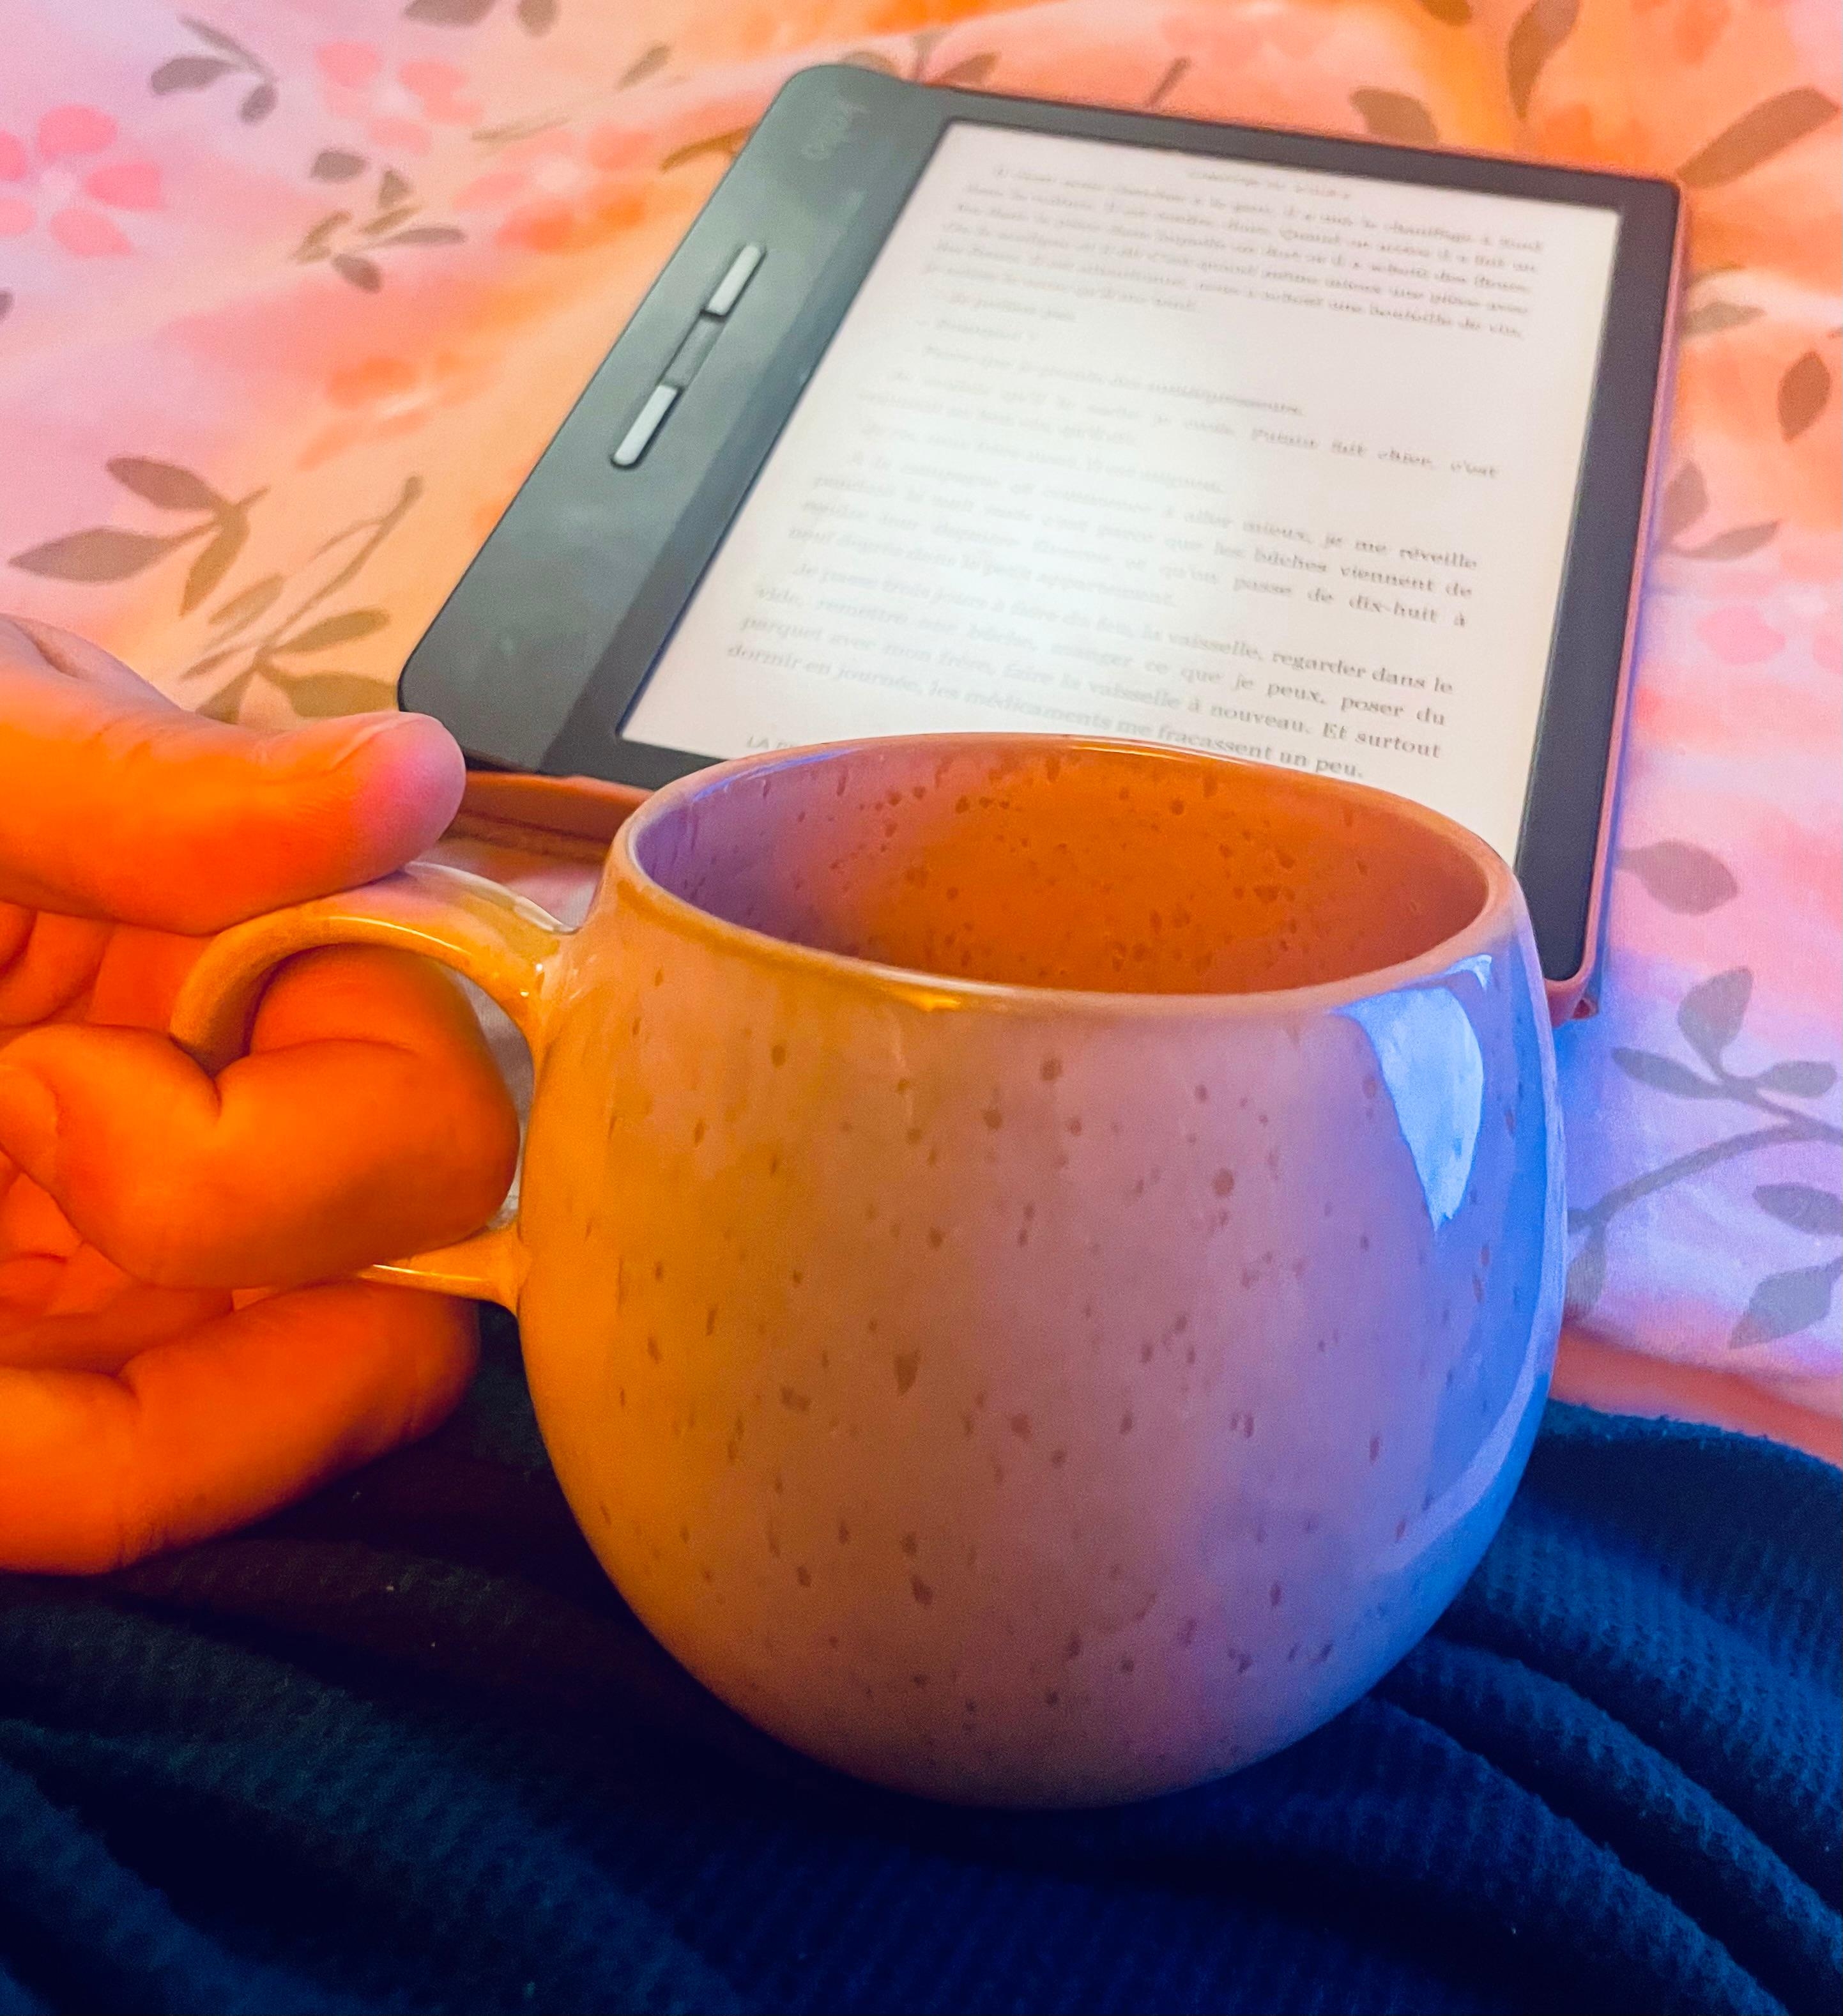 Kaffee im Bett - mit Buch 
#happiness
#kaffee 
#schlafzimmer  
